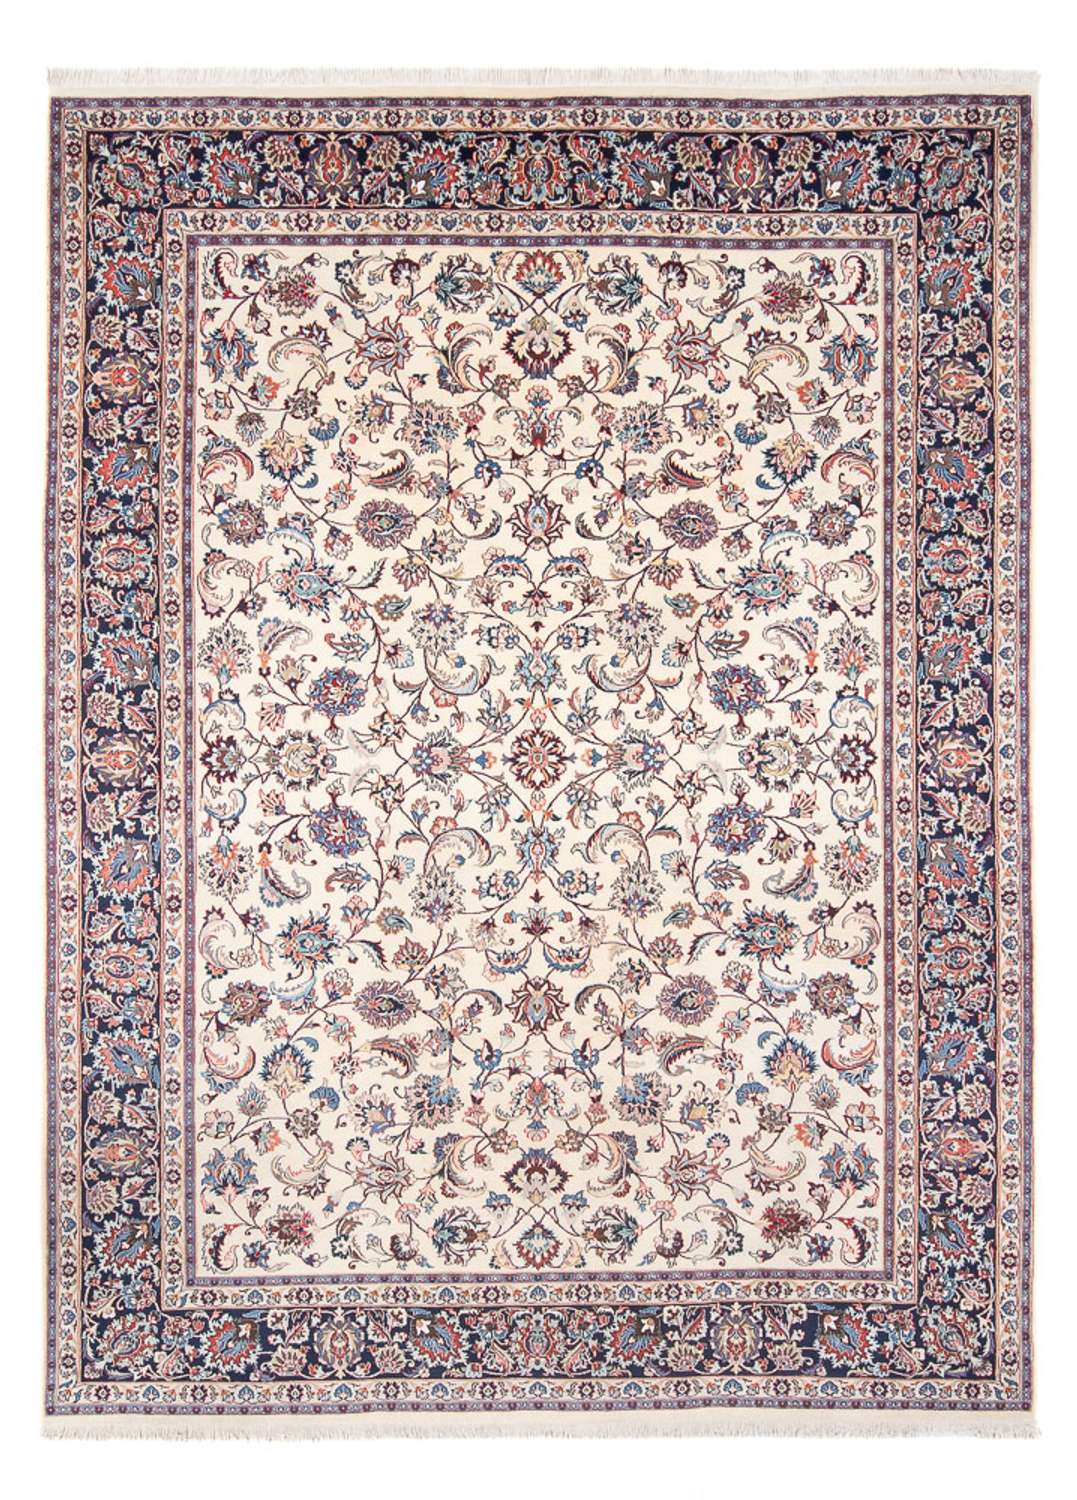 Tapis persan - Classique - 326 x 242 cm - crème